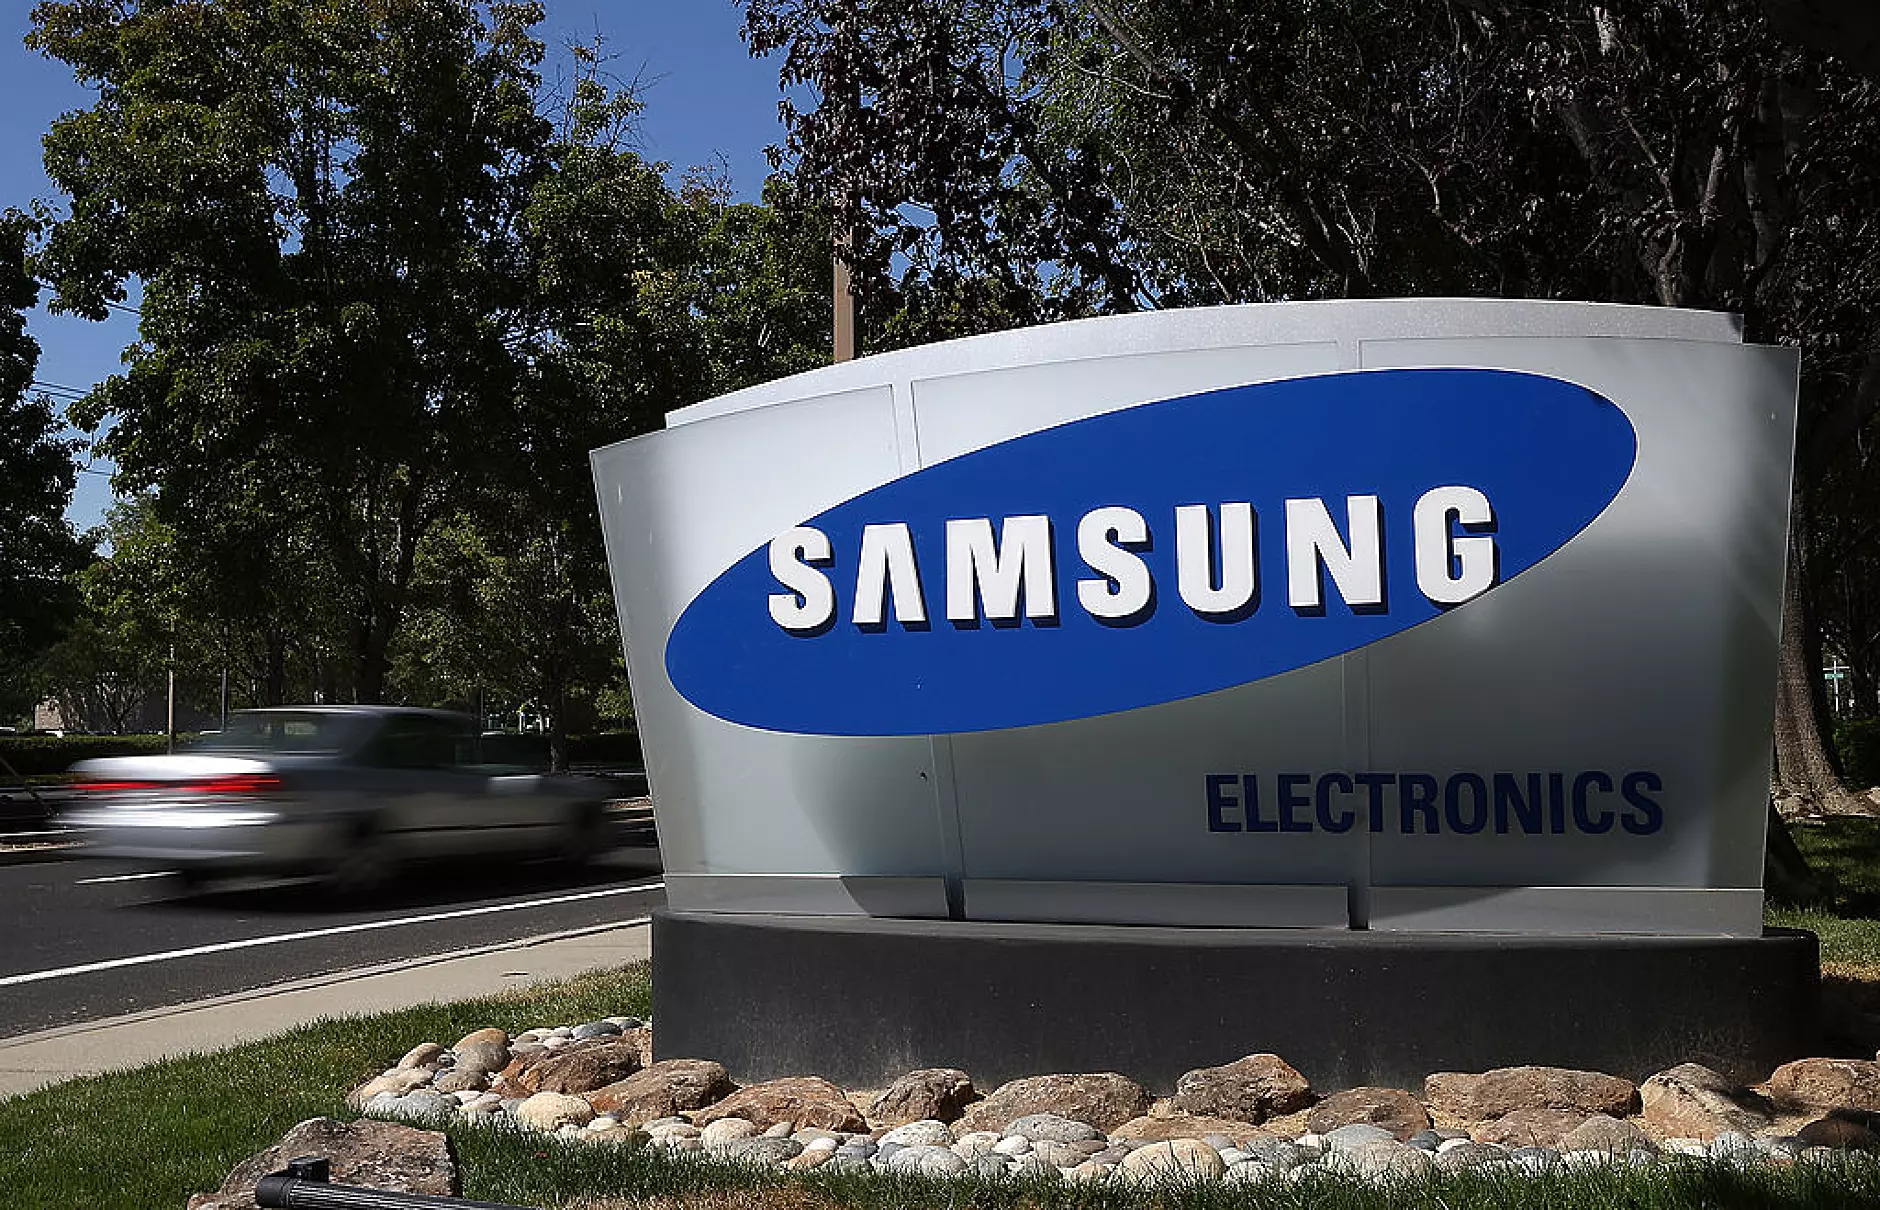 Тримесечната печалба на Samsung пада до 8-годишно дъно